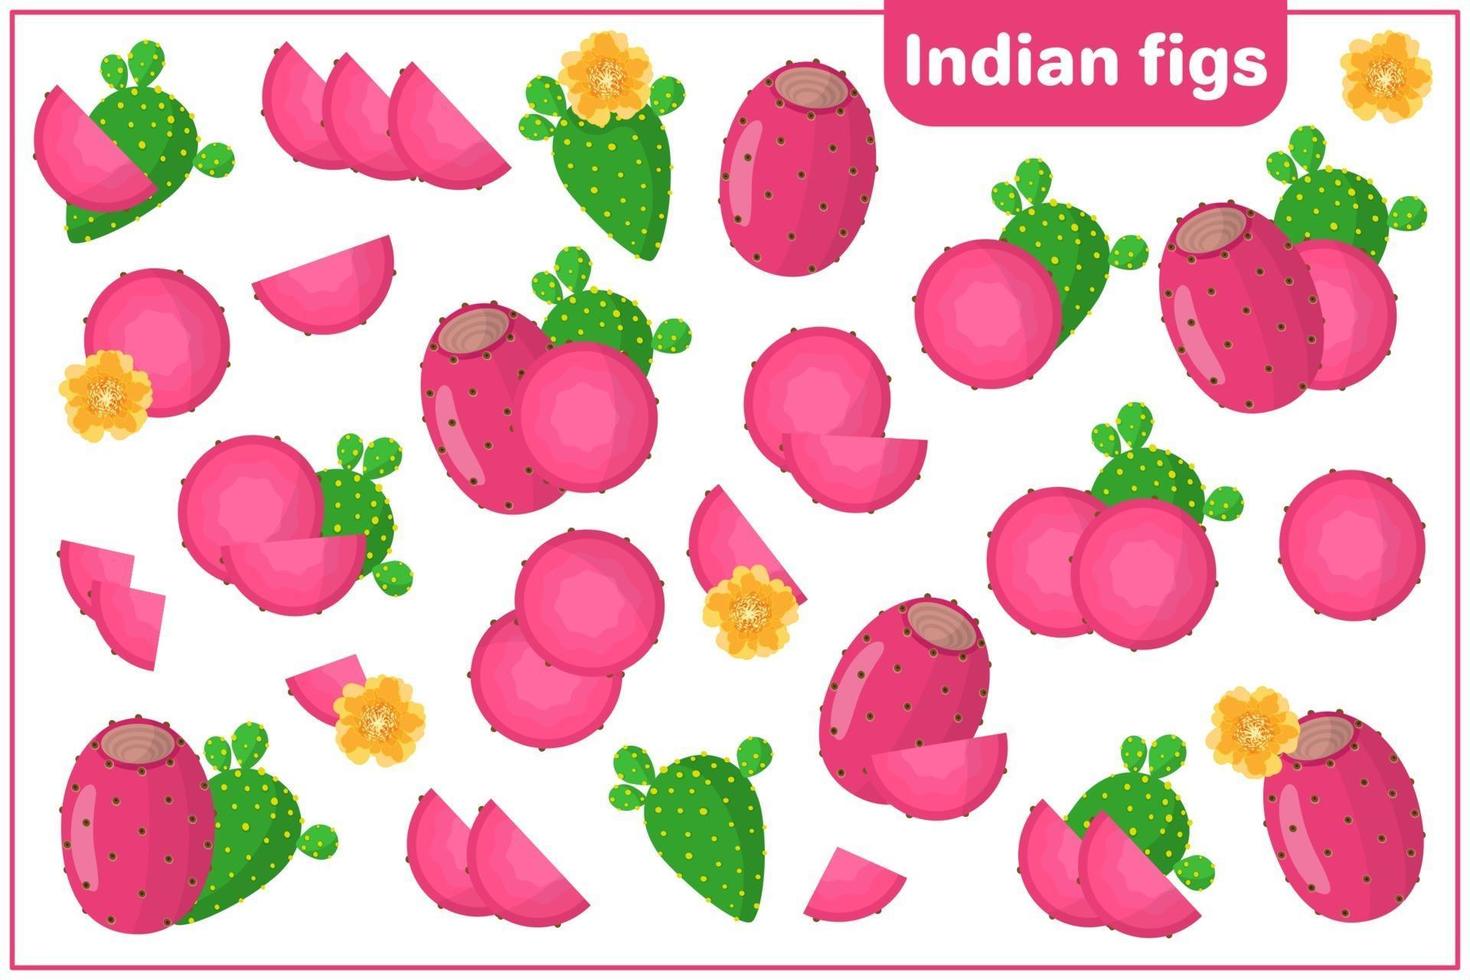 ensemble d'illustrations de dessin animé de vecteur avec des fruits exotiques de figues indiennes, des fleurs et des feuilles isolés sur fond blanc